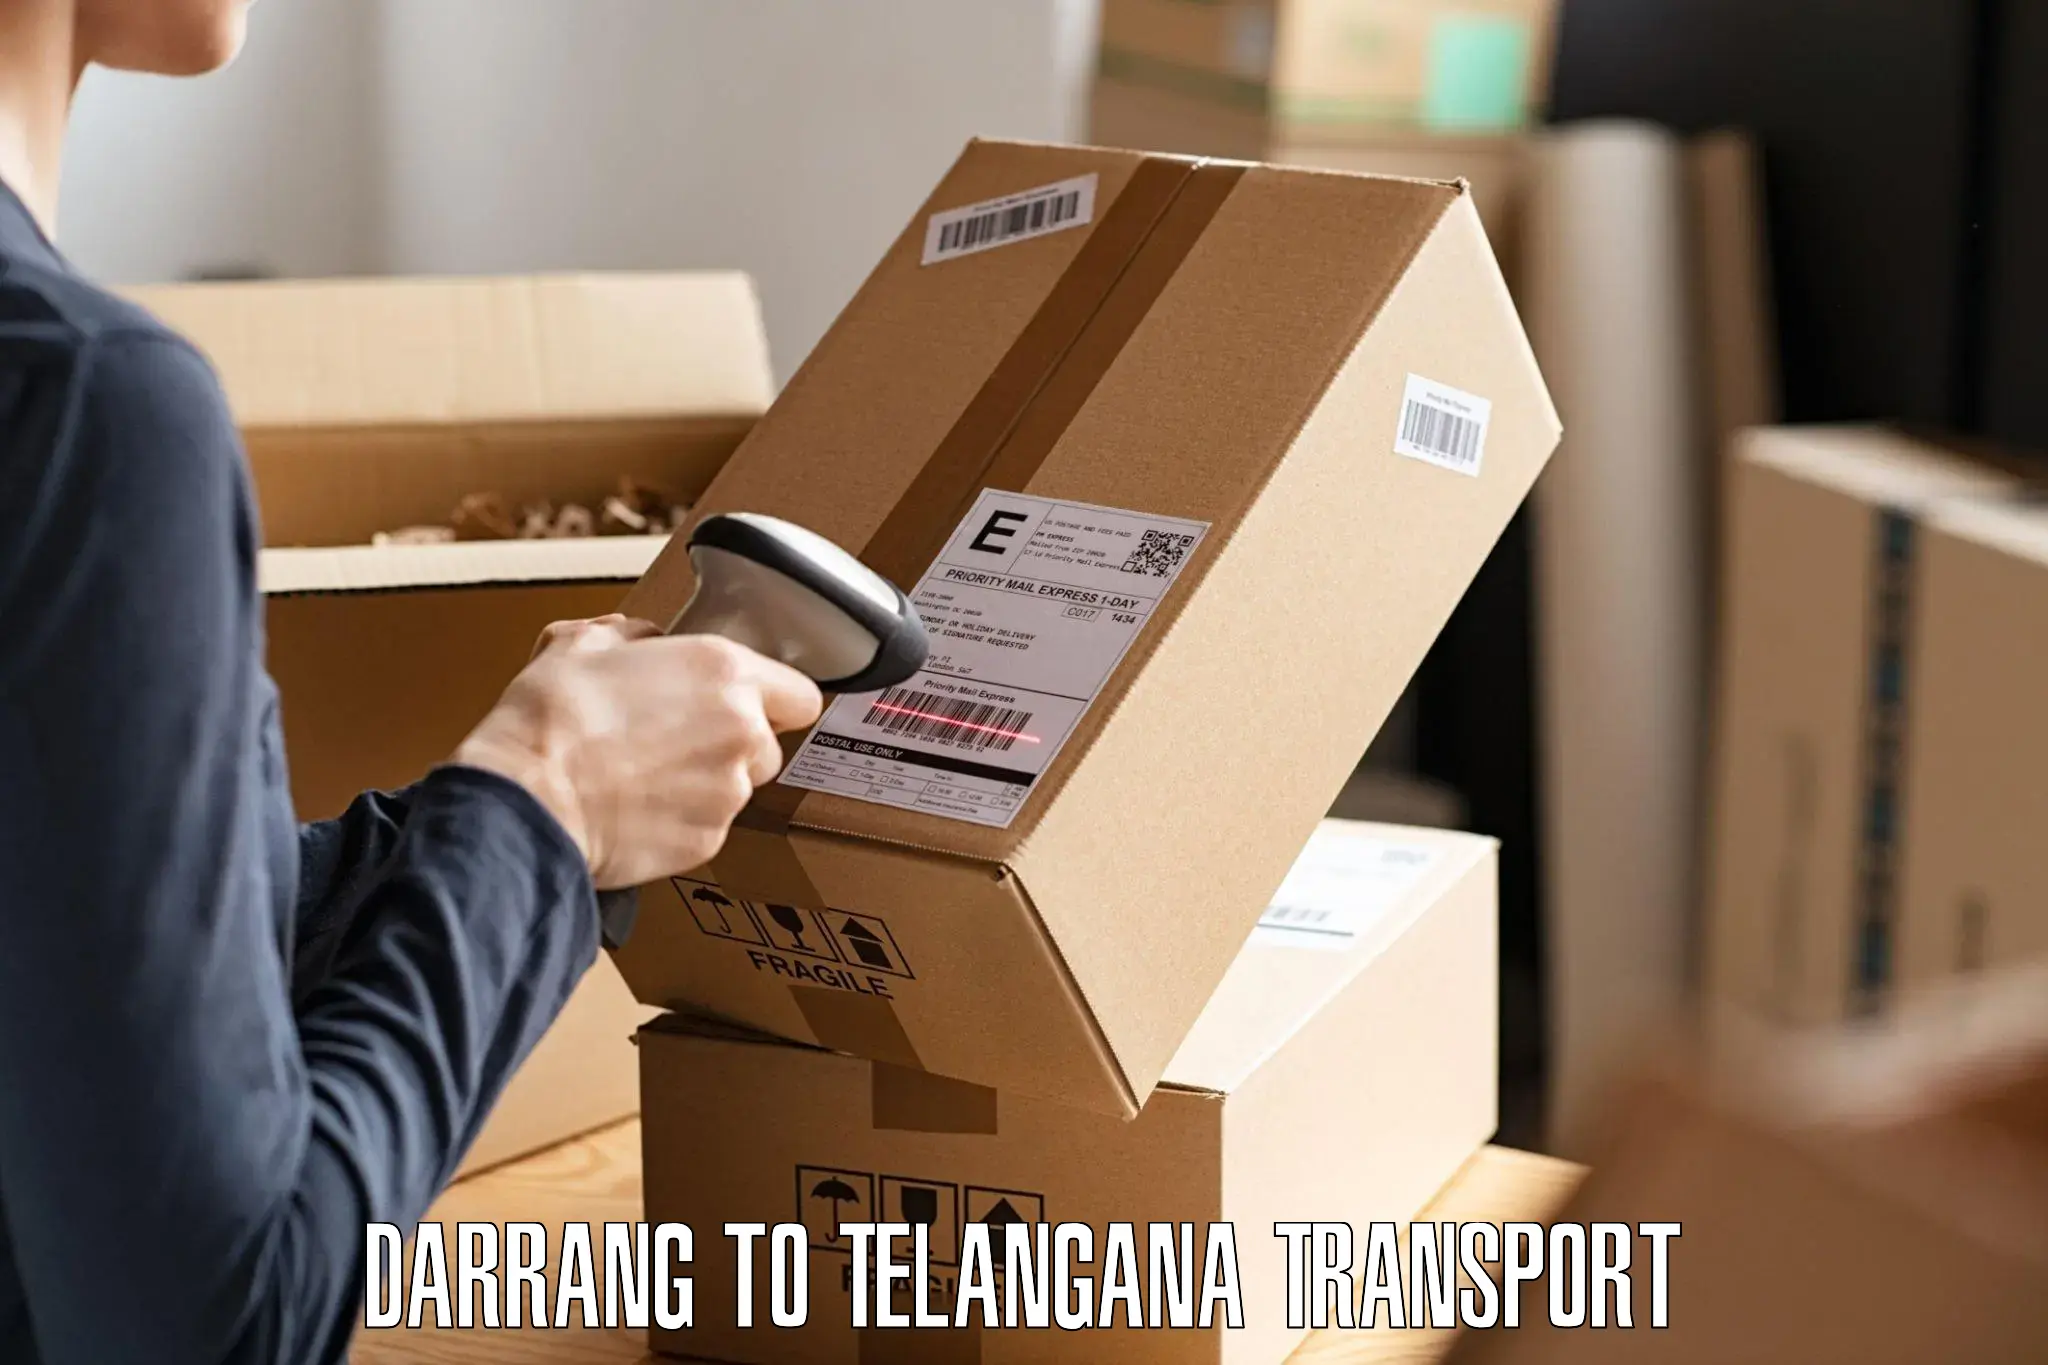 Bike shipping service Darrang to Choppadandi